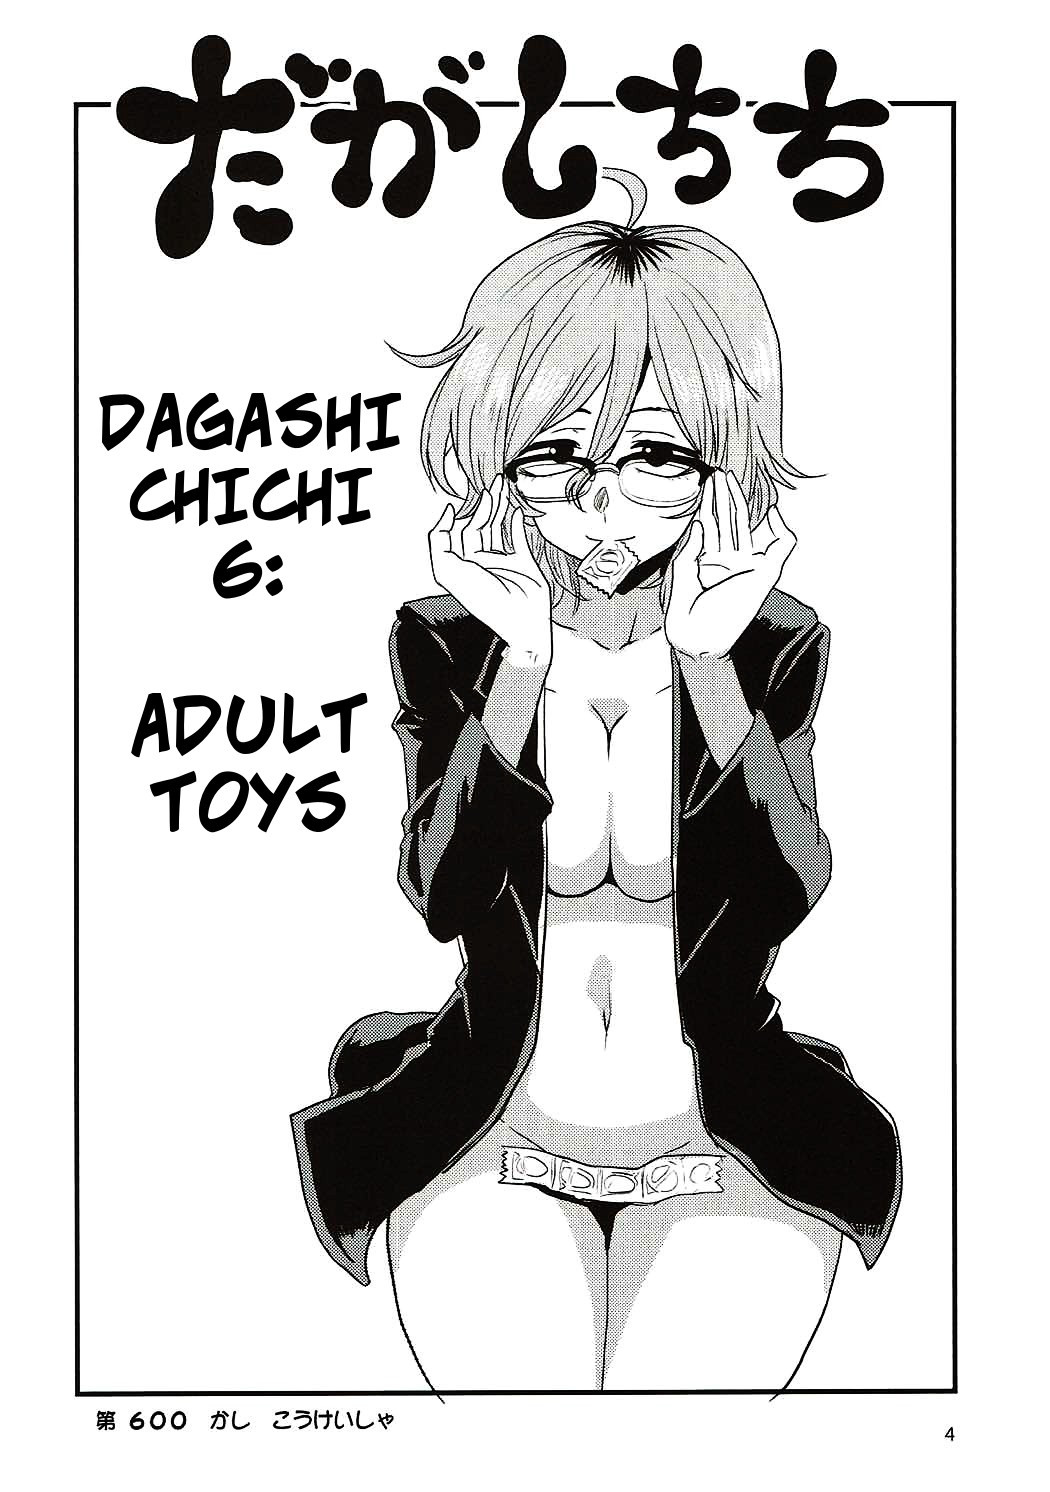 Hentai Manga Comic-Dagashi Chichi 6-Read-3